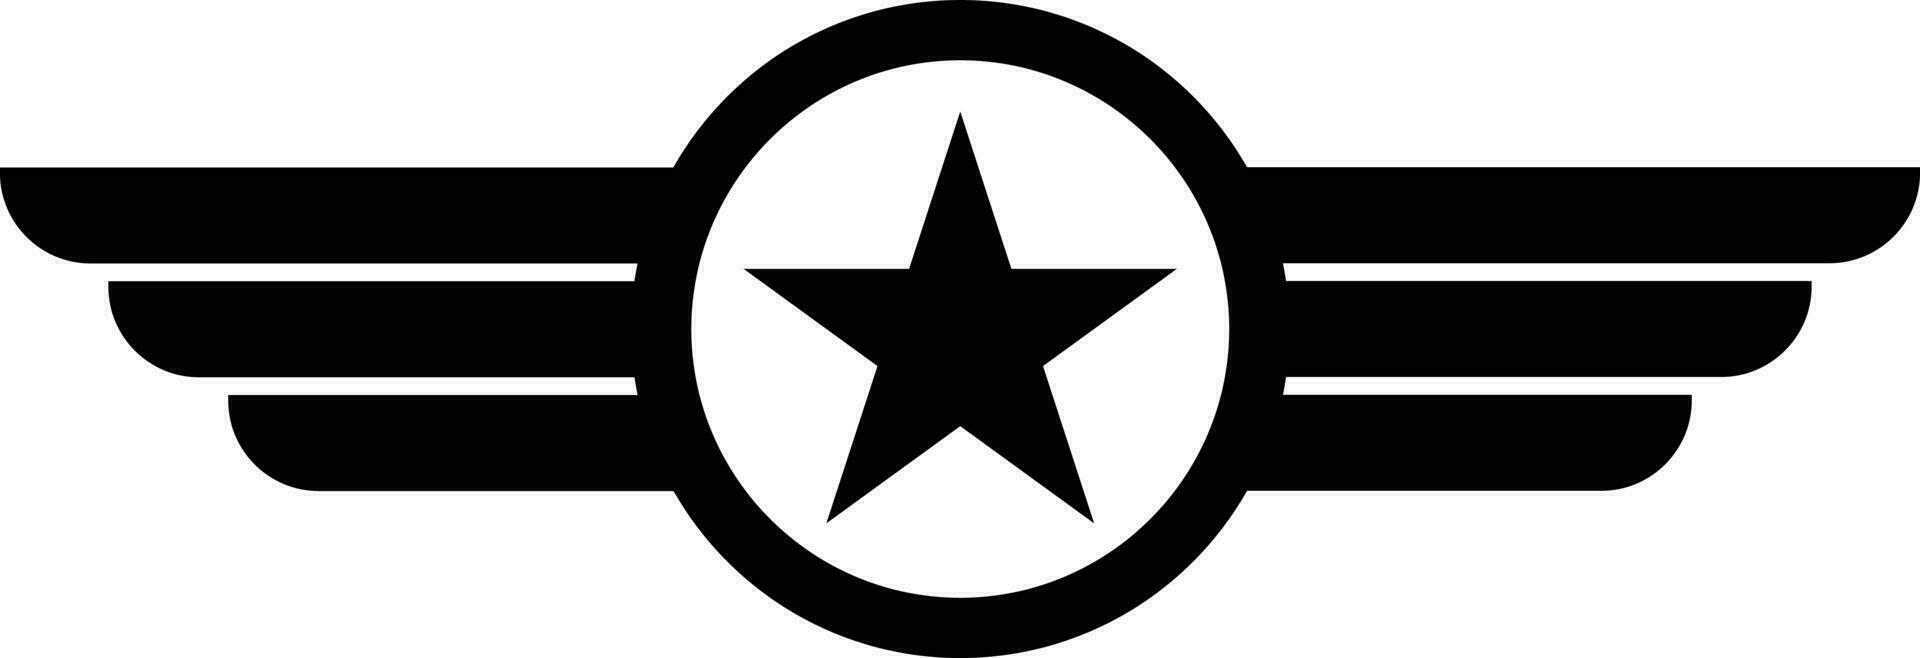 étoile avec ailes logo vecteur illustration. militaire et armée ailé badge. aviation ailes icône